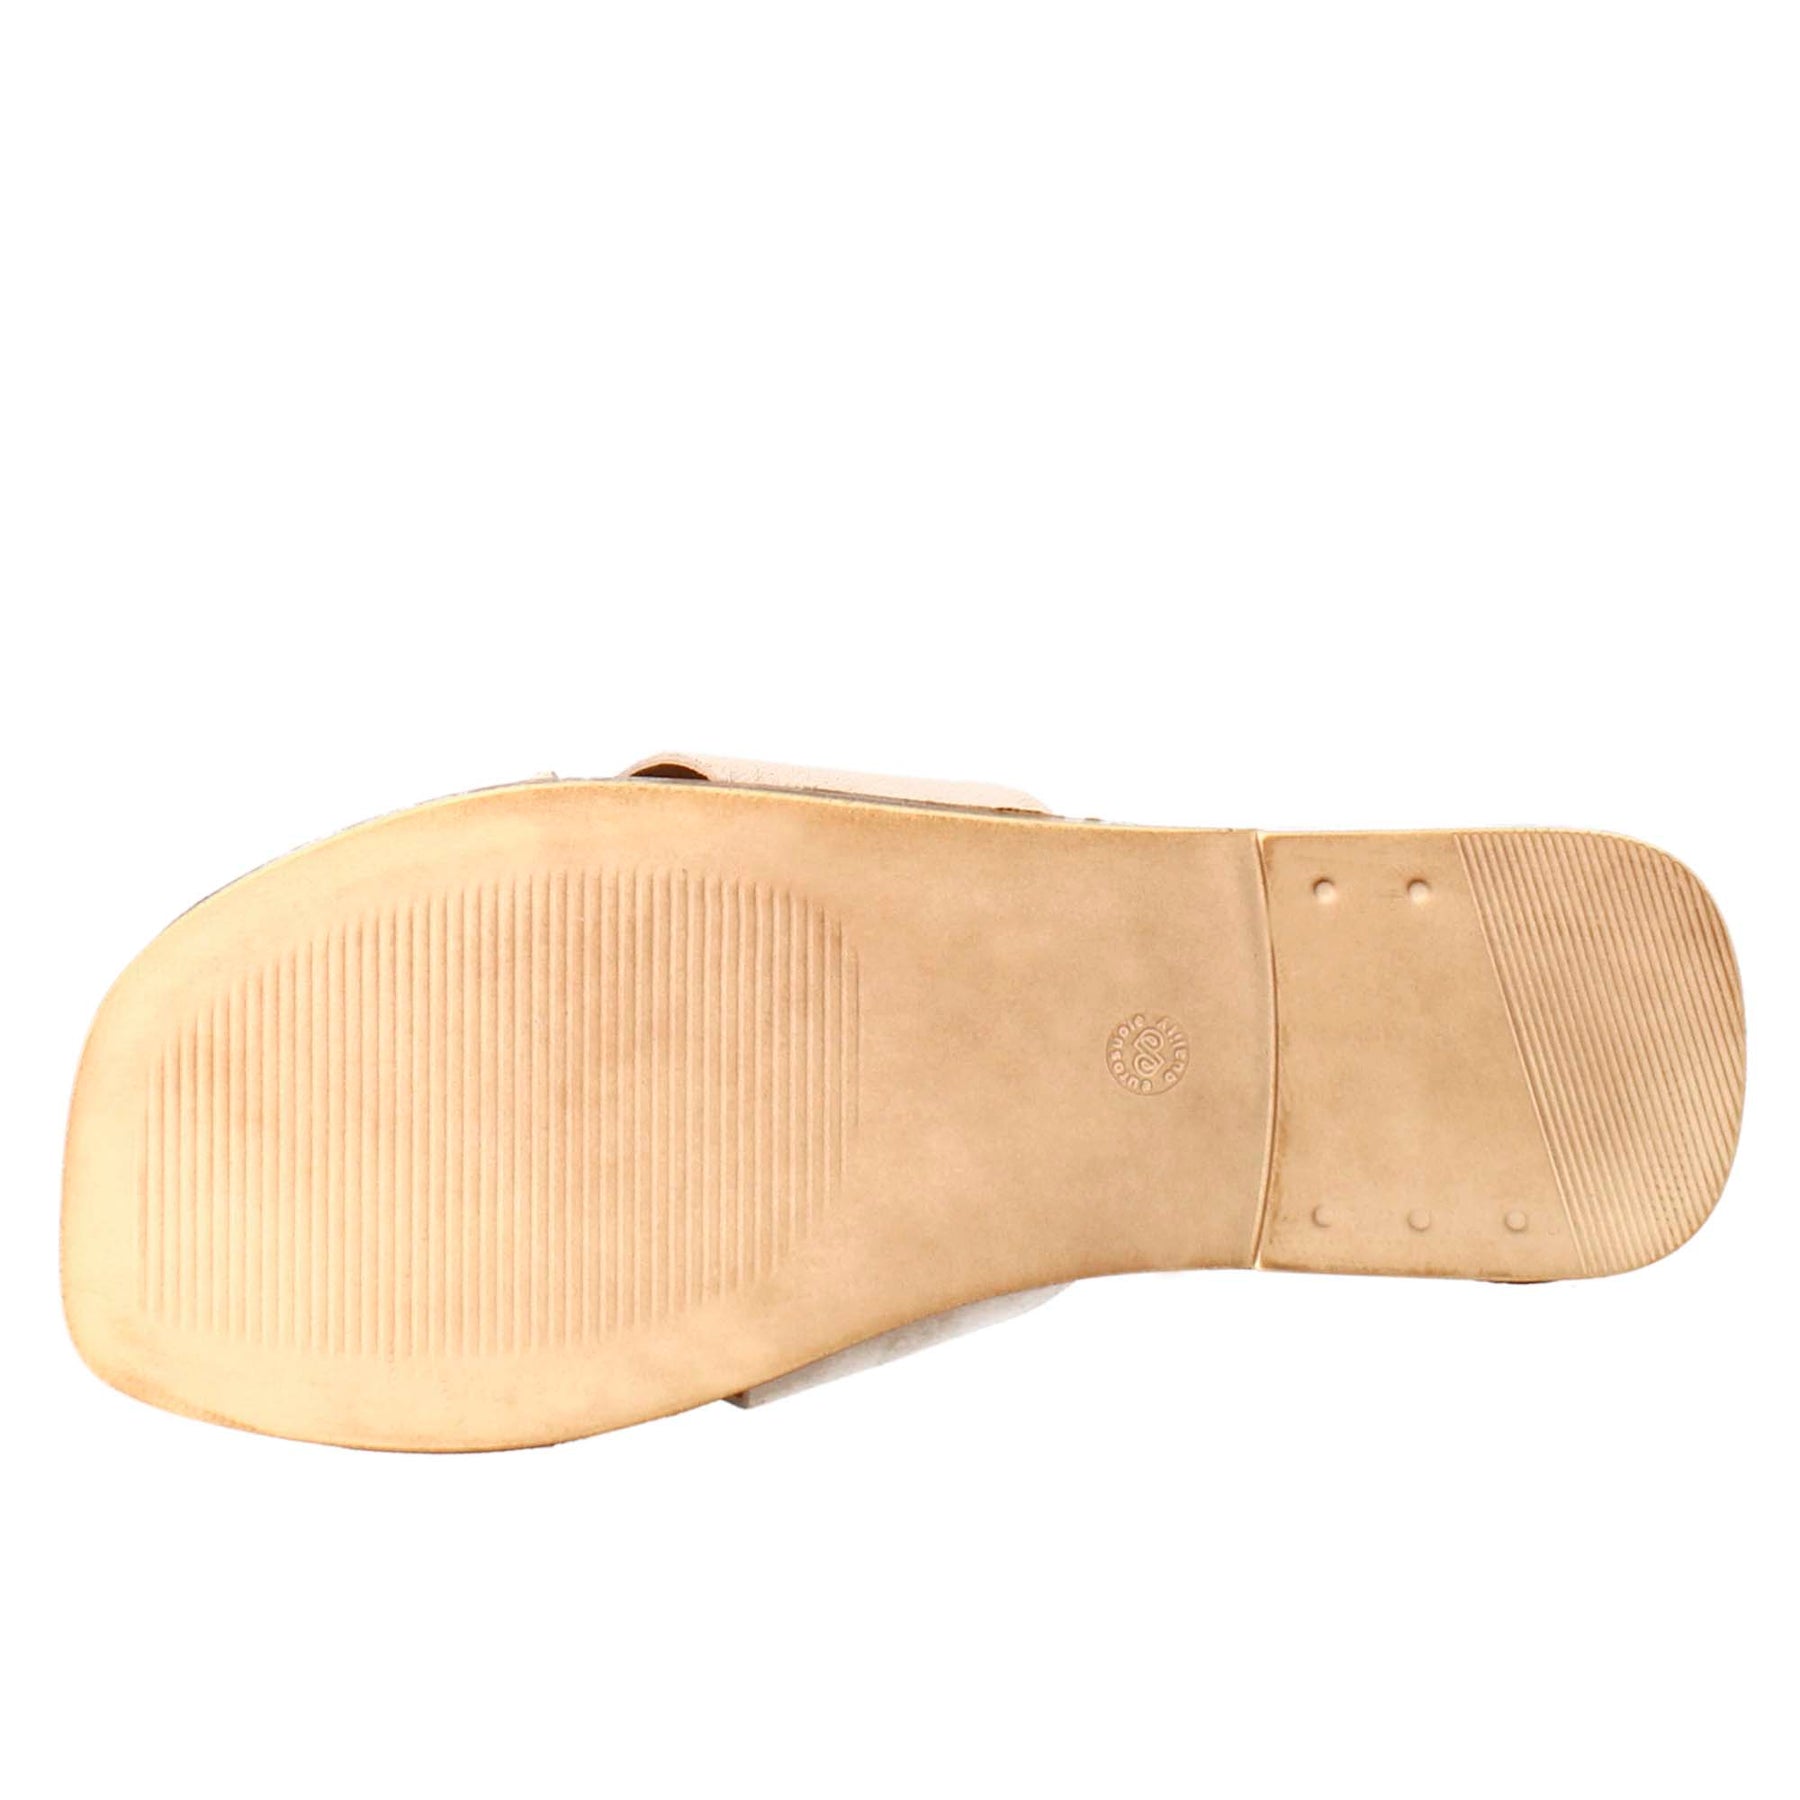 Sandale double bande pour femme en daim beige